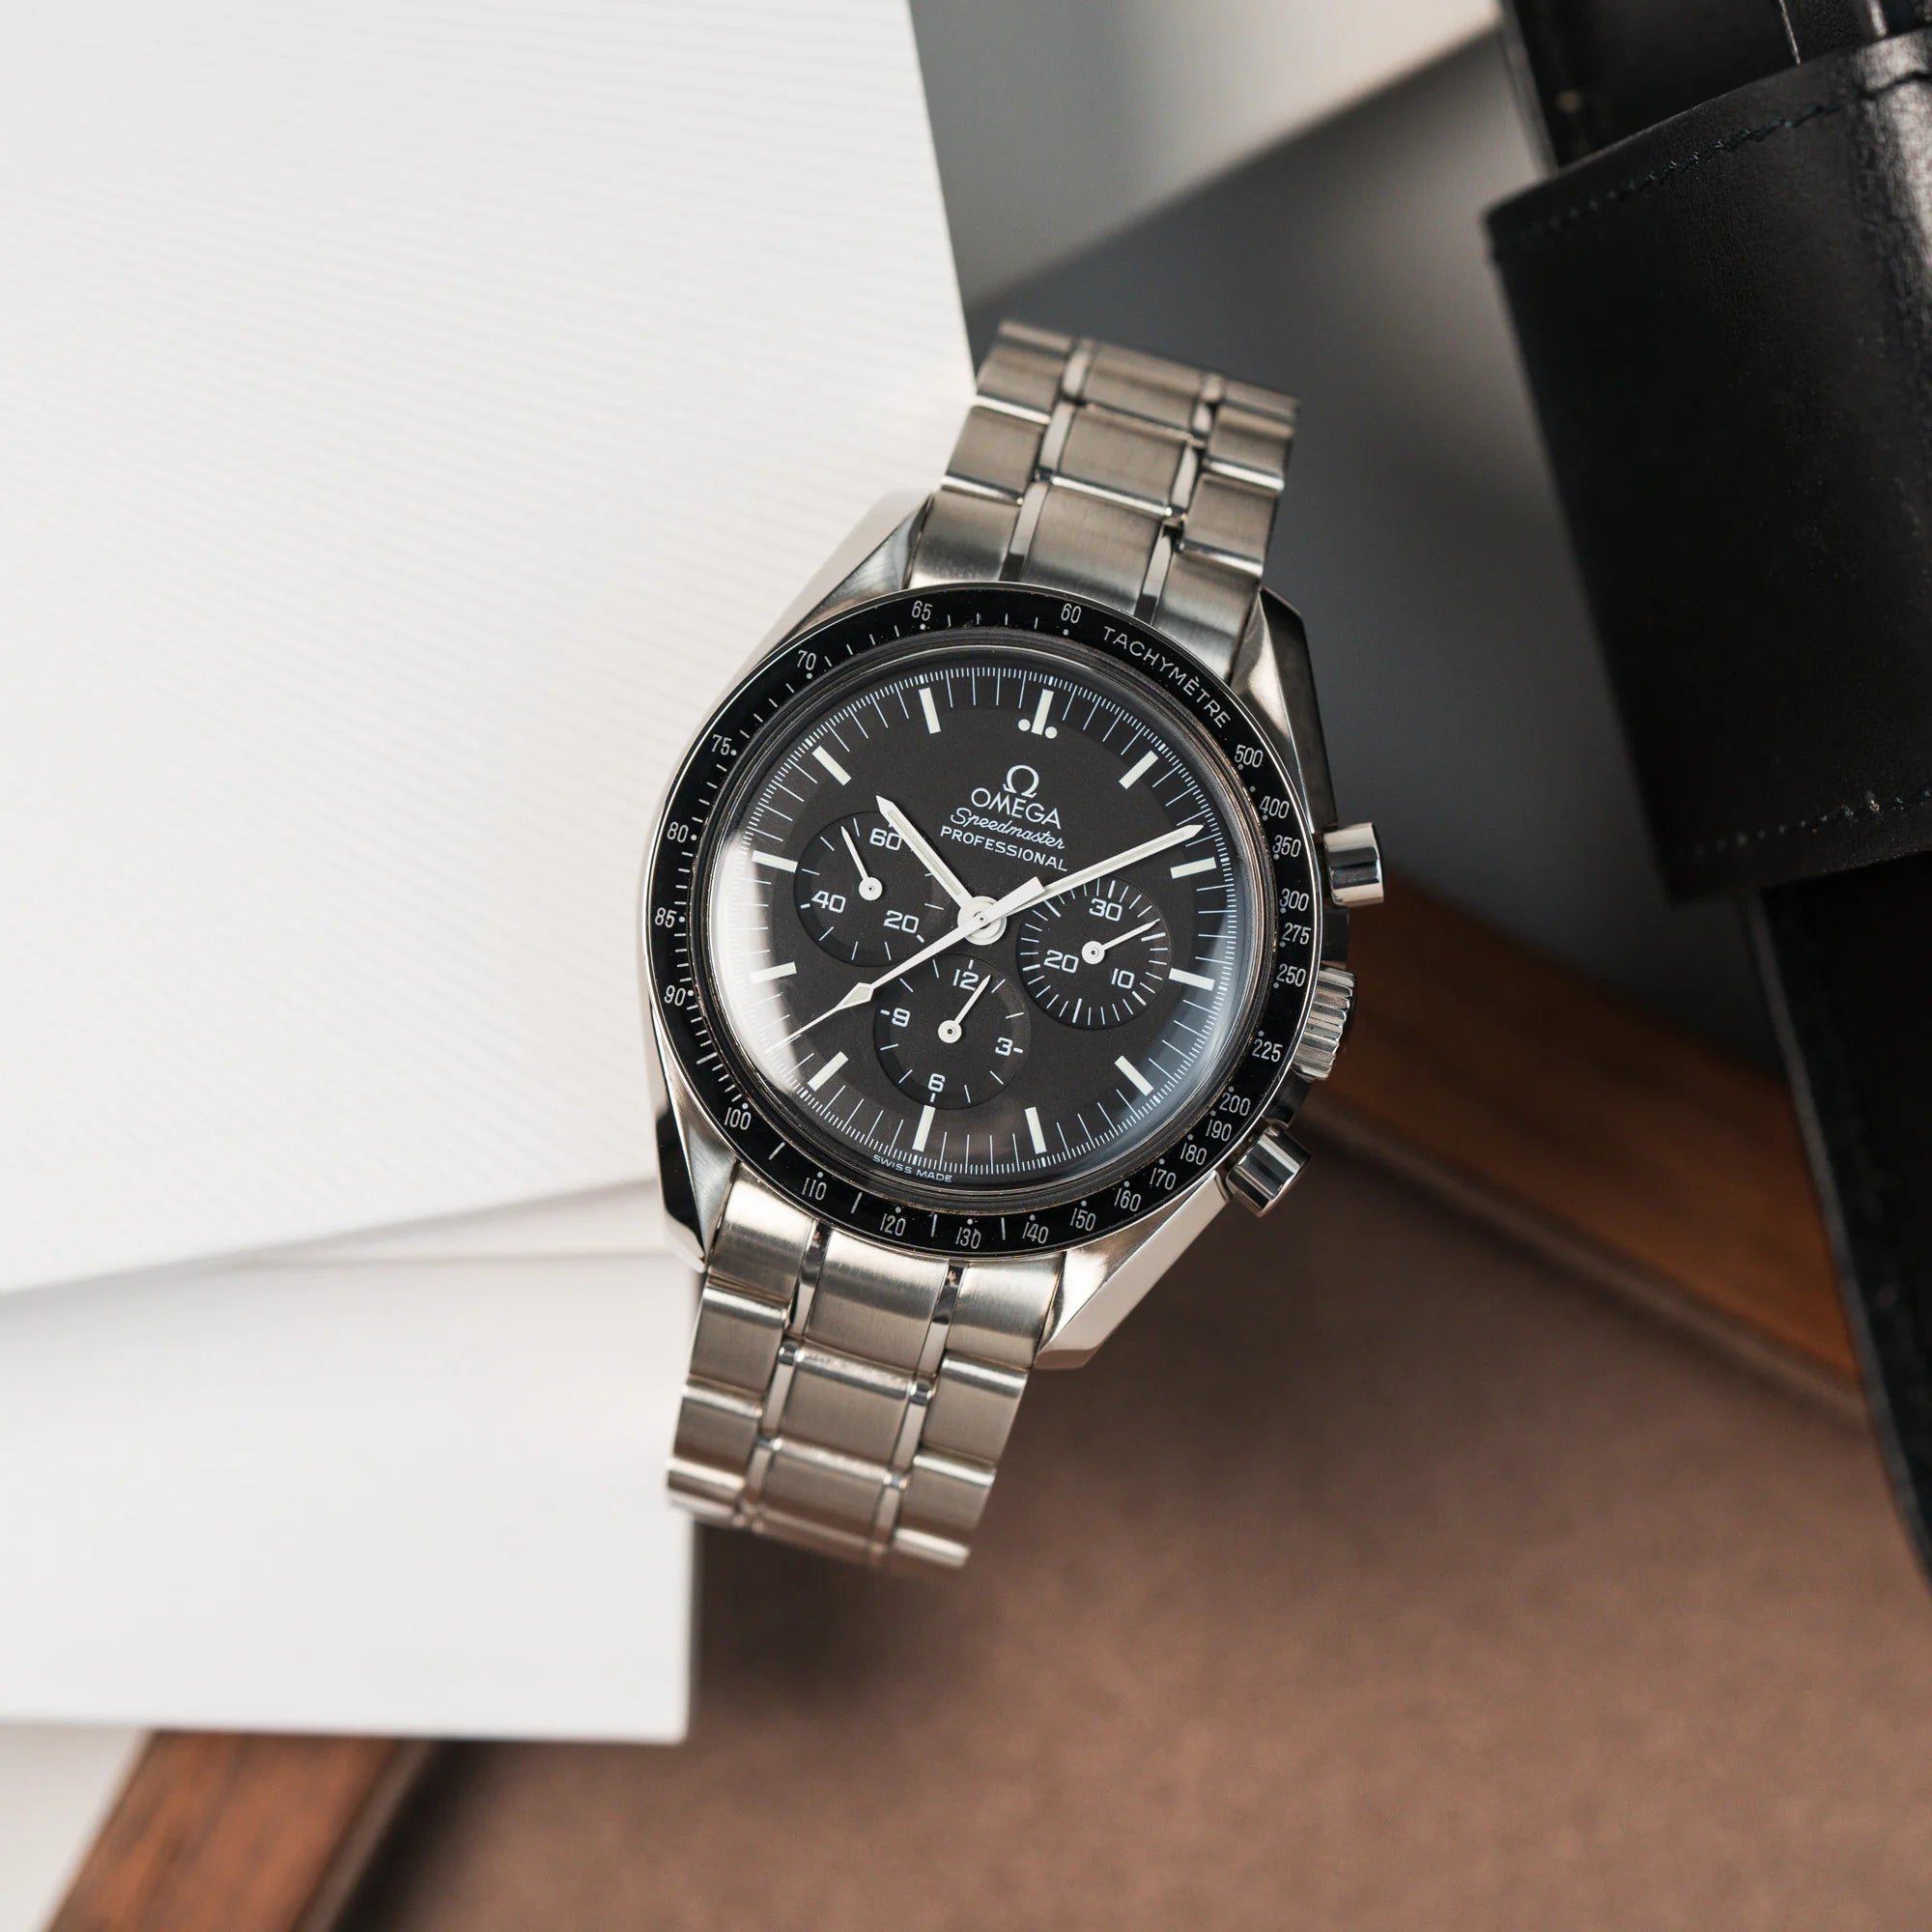 Produktfotografie der Omega Speedmaster Moonwatch Professional mit der Referenz 357.50.00 mit dem klassischen schwarzen Zifferblatt